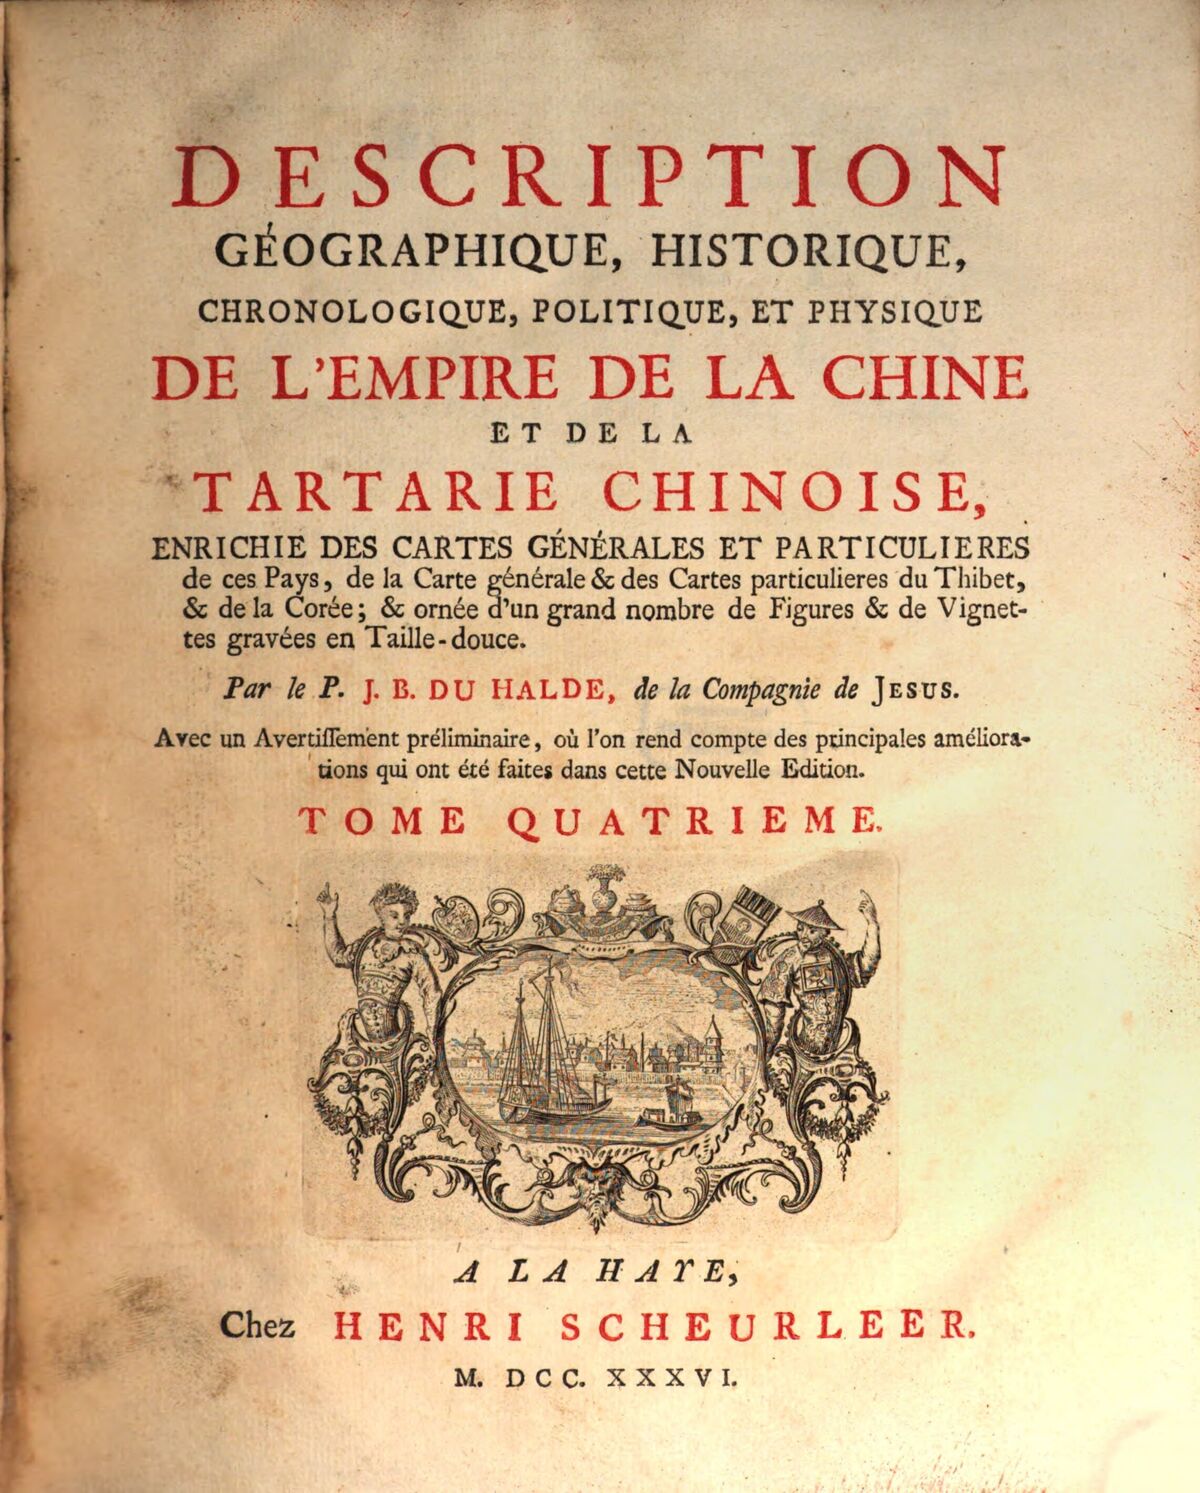 GFD 3/261: Titelblatt des 4. Bands der «Description de la Chine et de la Tartarie chinoise» von Du Halde, 1736